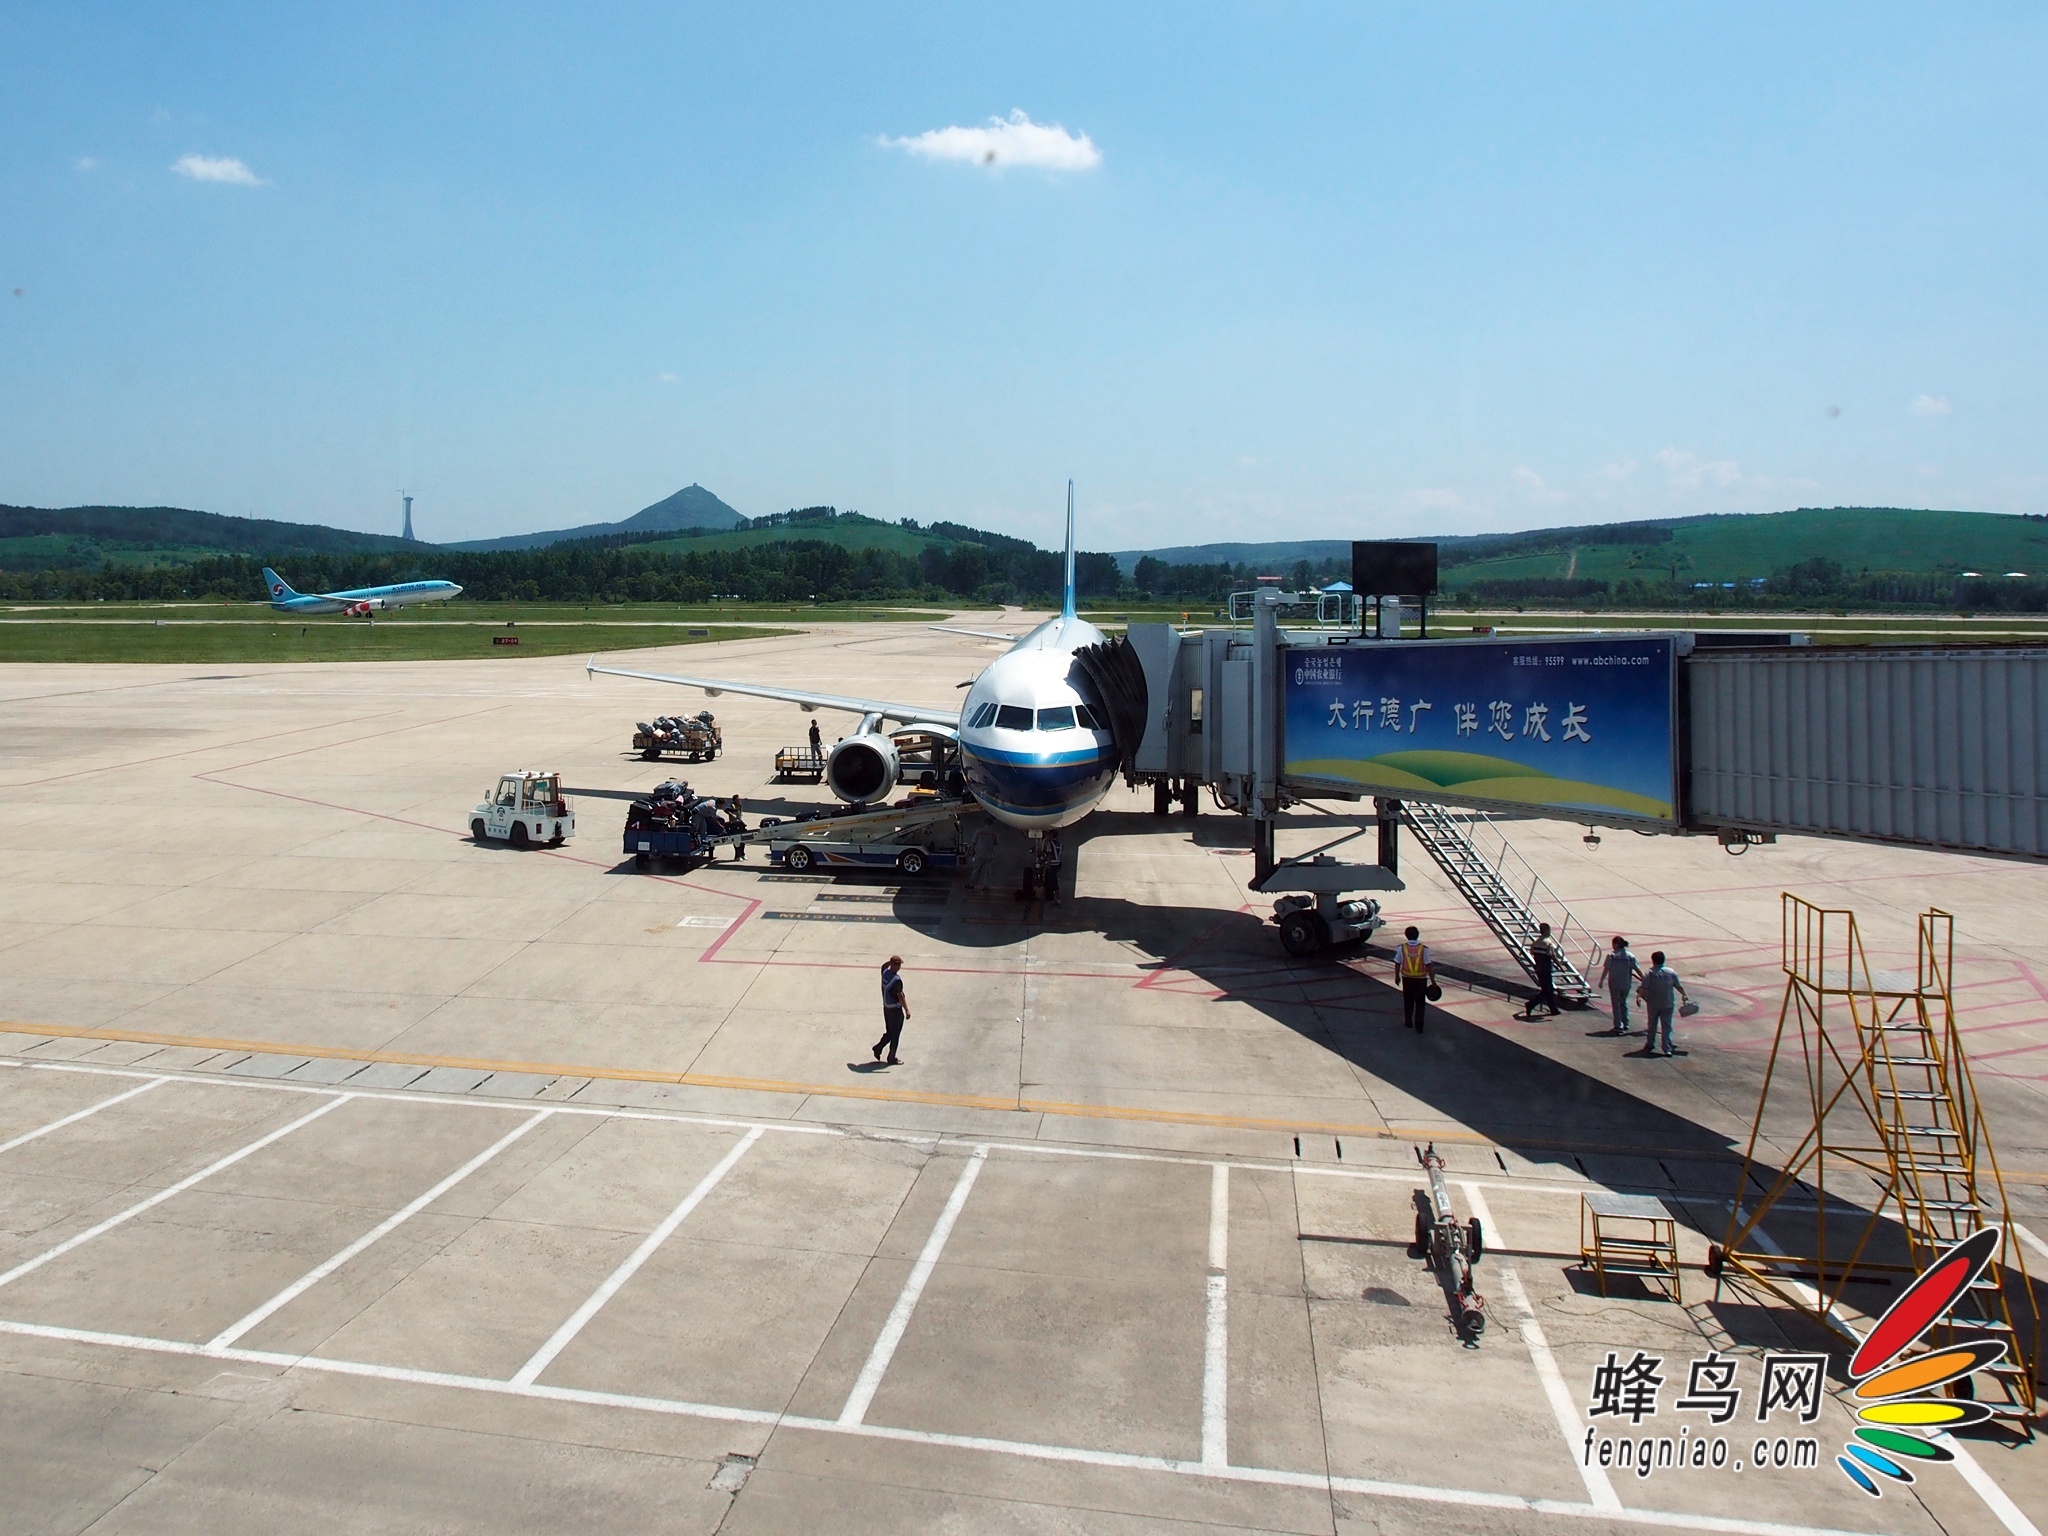 延吉机场是个小机场,在此停靠的飞机也比较少